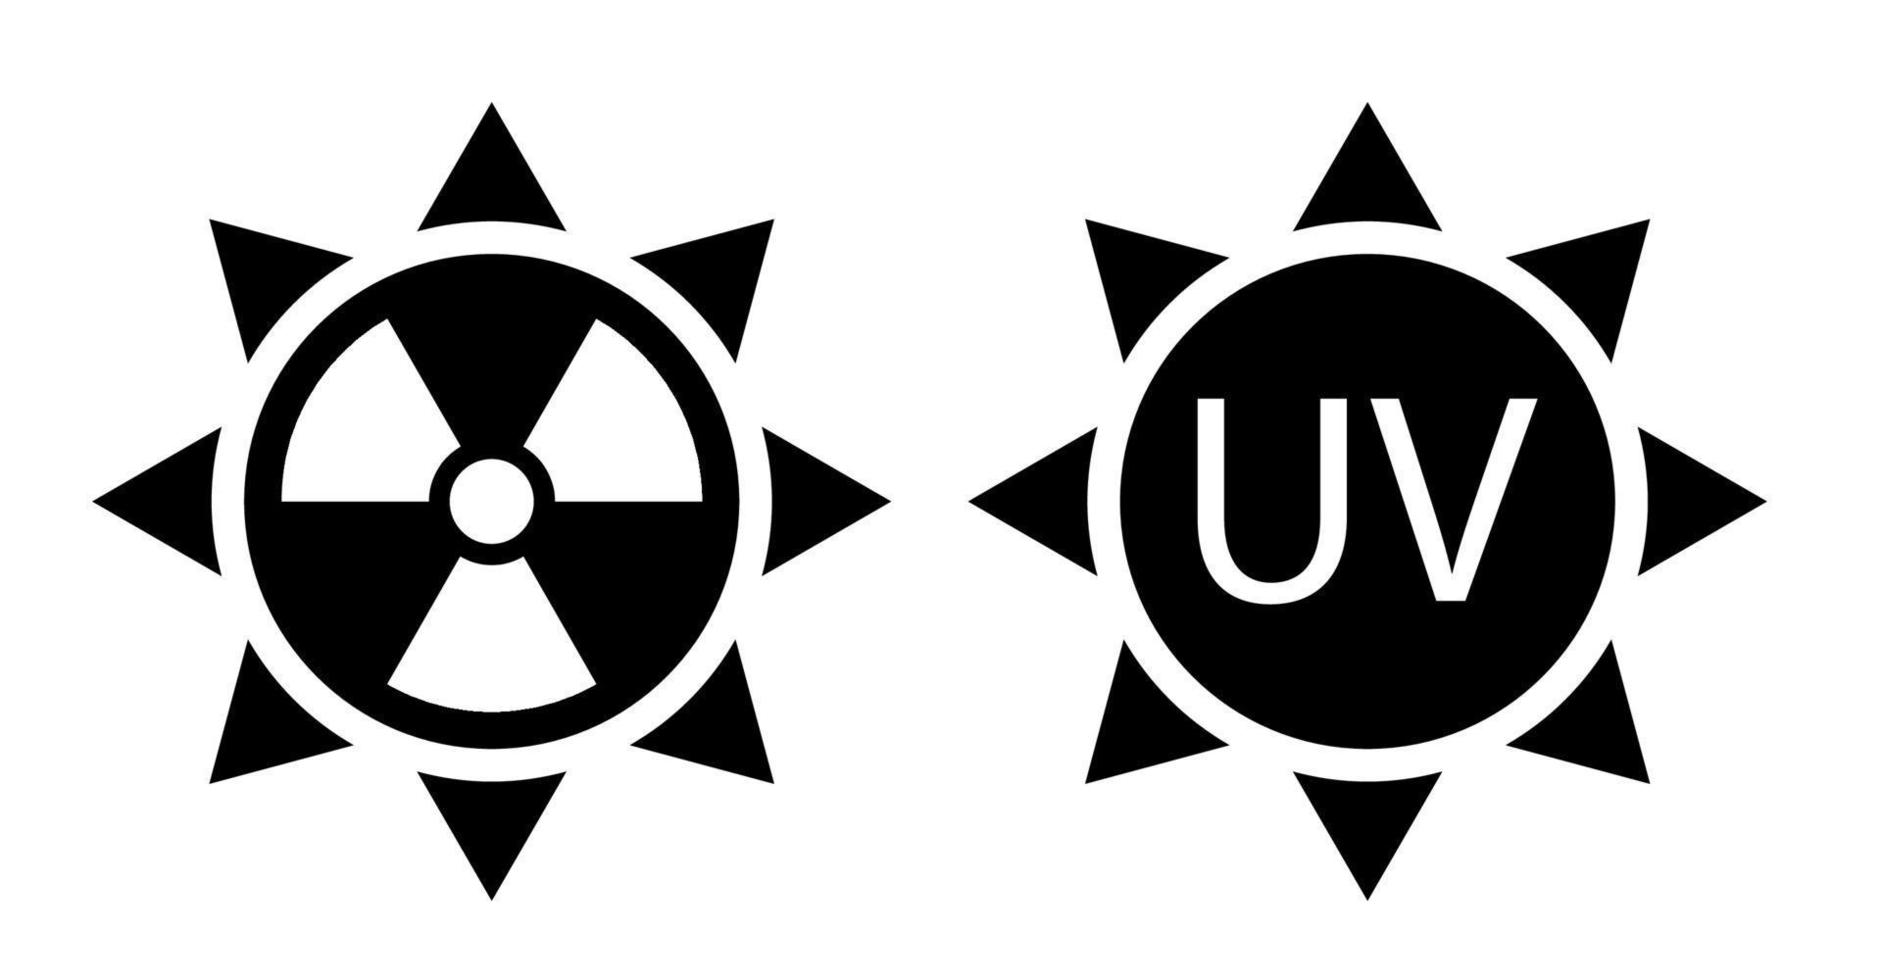 Schwarz-Weiß-Zeichen für hohe Sonnenaktivität. erhöhte UV-Strahlung. Schutz vor Sonnenbrand. isolierter Vektor auf weißem Hintergrund